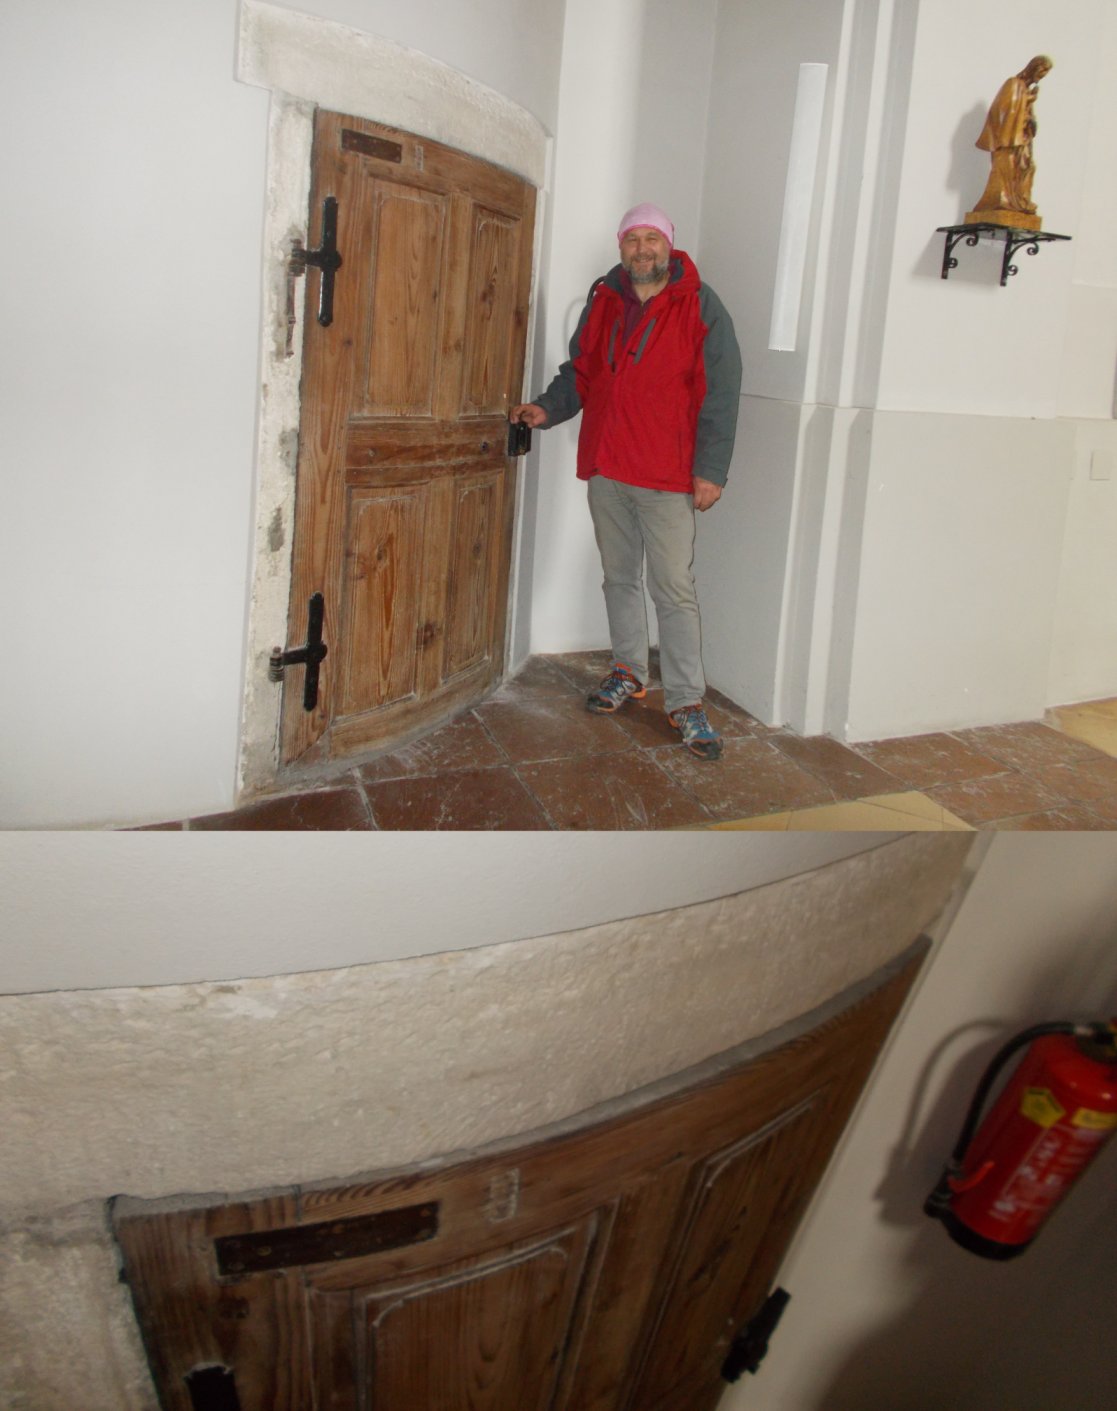 Eizigartig: Eine runde Holztüre in einer Kirche Von oben gut zu erkennnen 